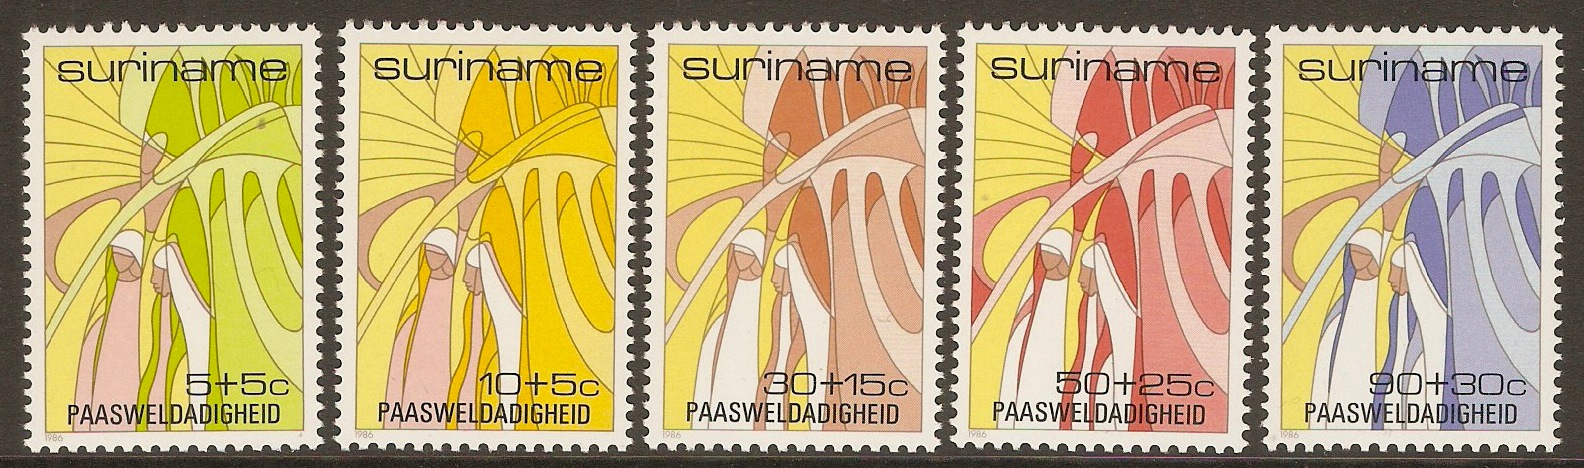 Surinam 1986 Easter set. SG1277-SG1281.